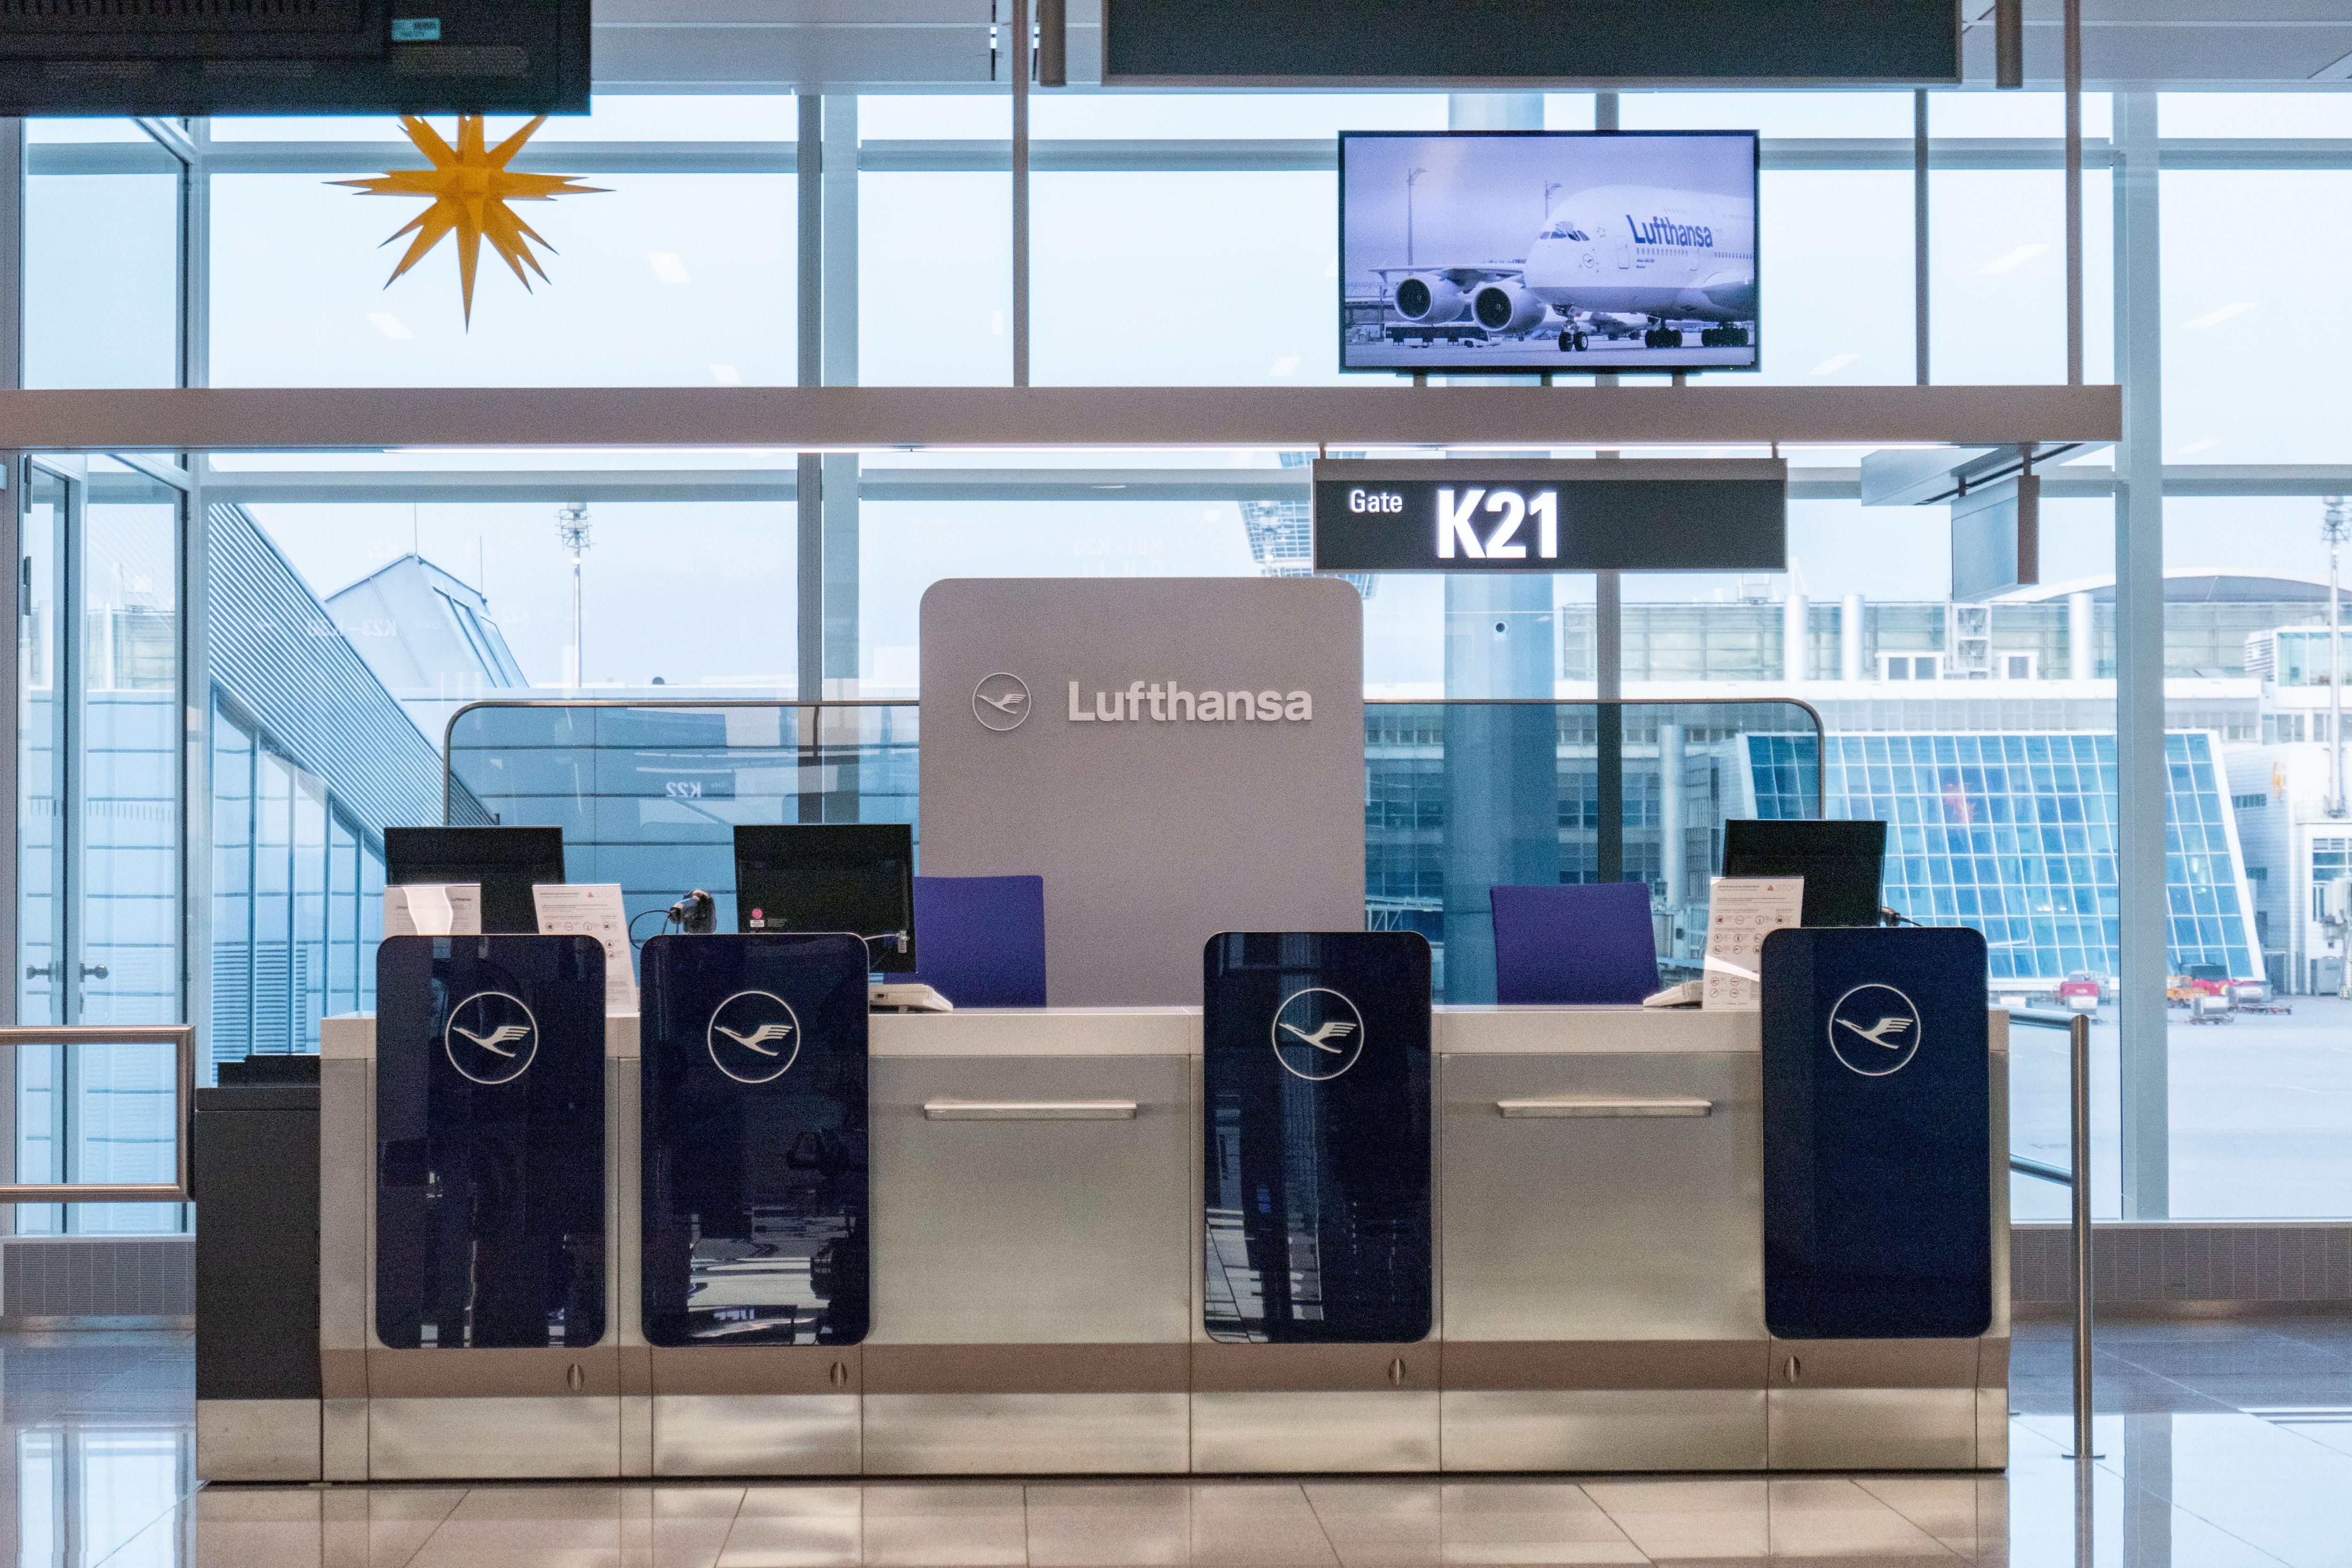 Lufthansa скасовує половину рейсів через коронавірус